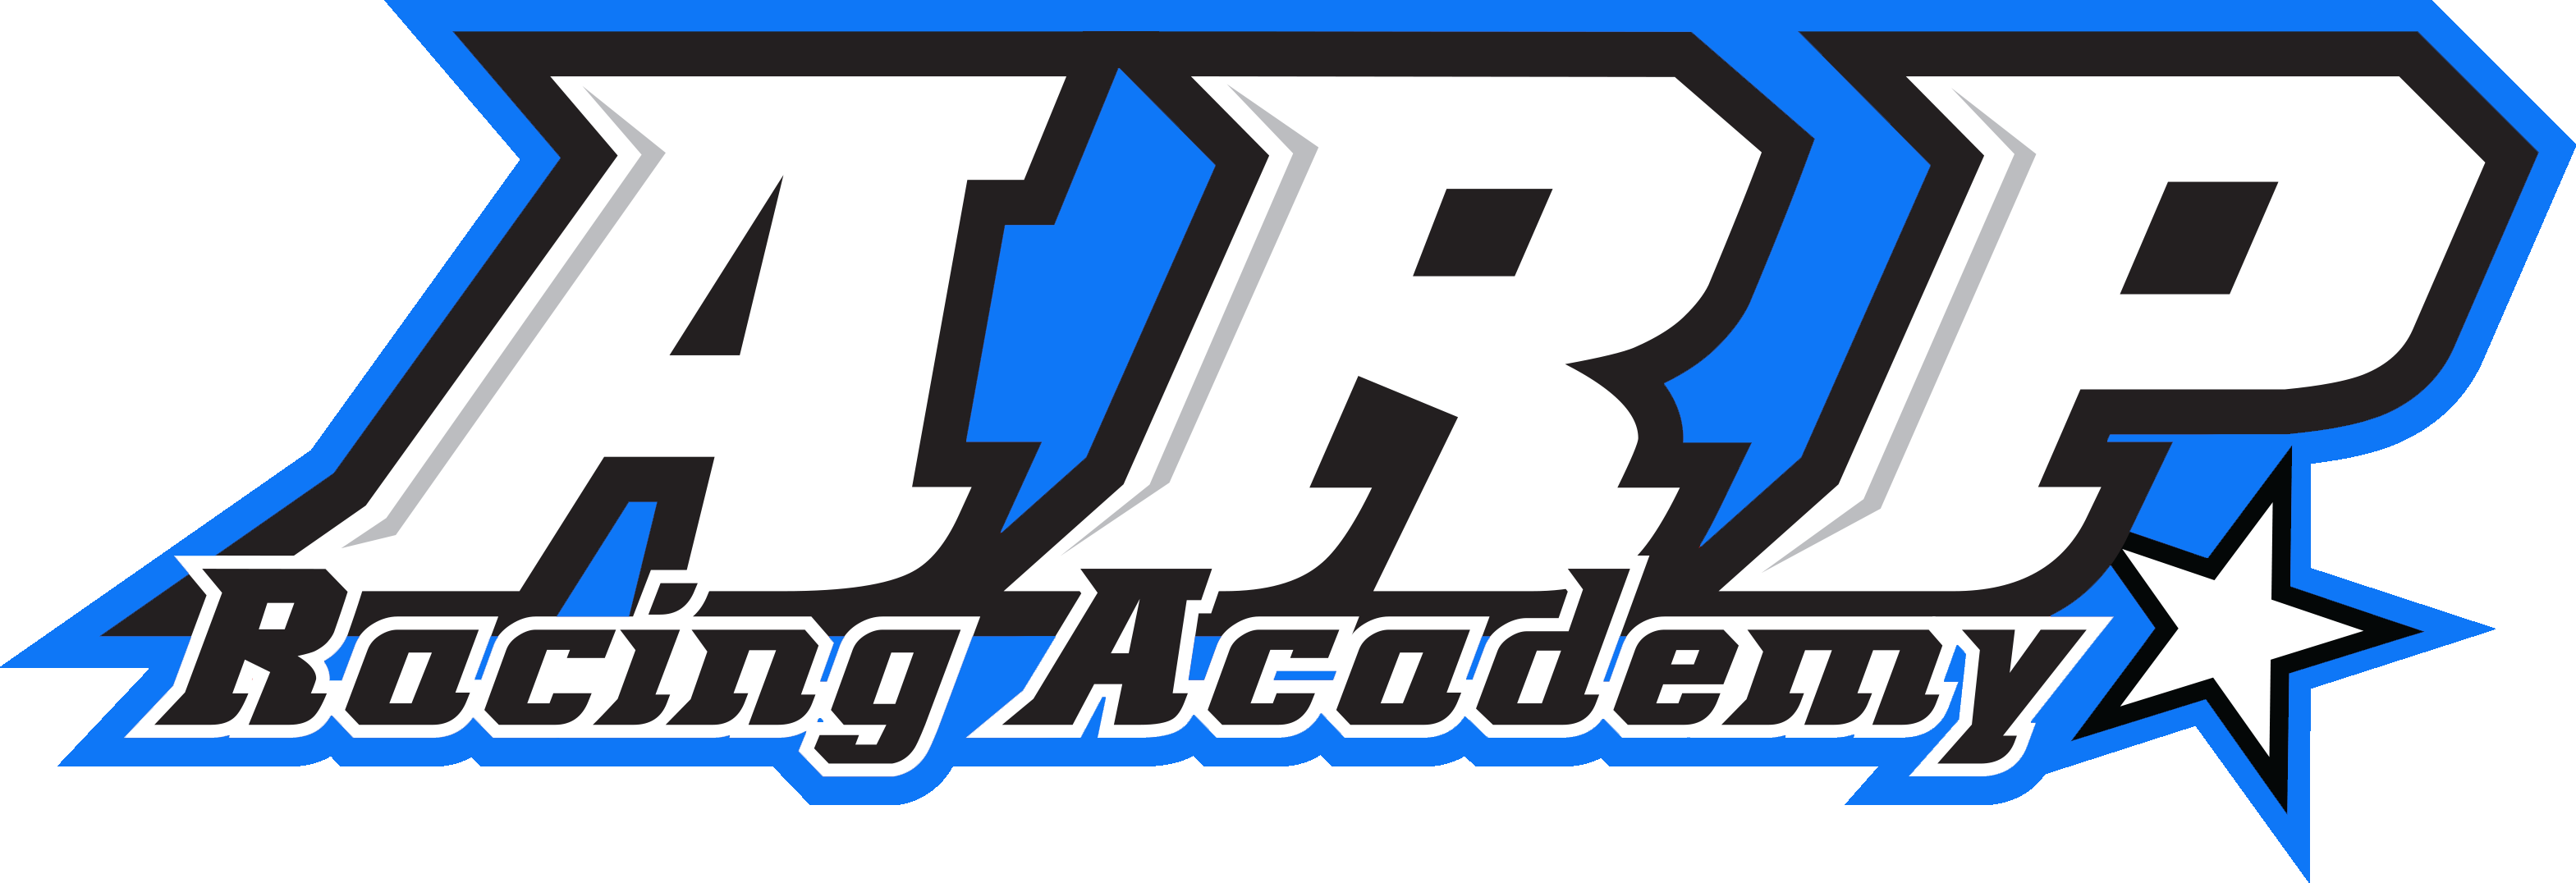 Arp Academy